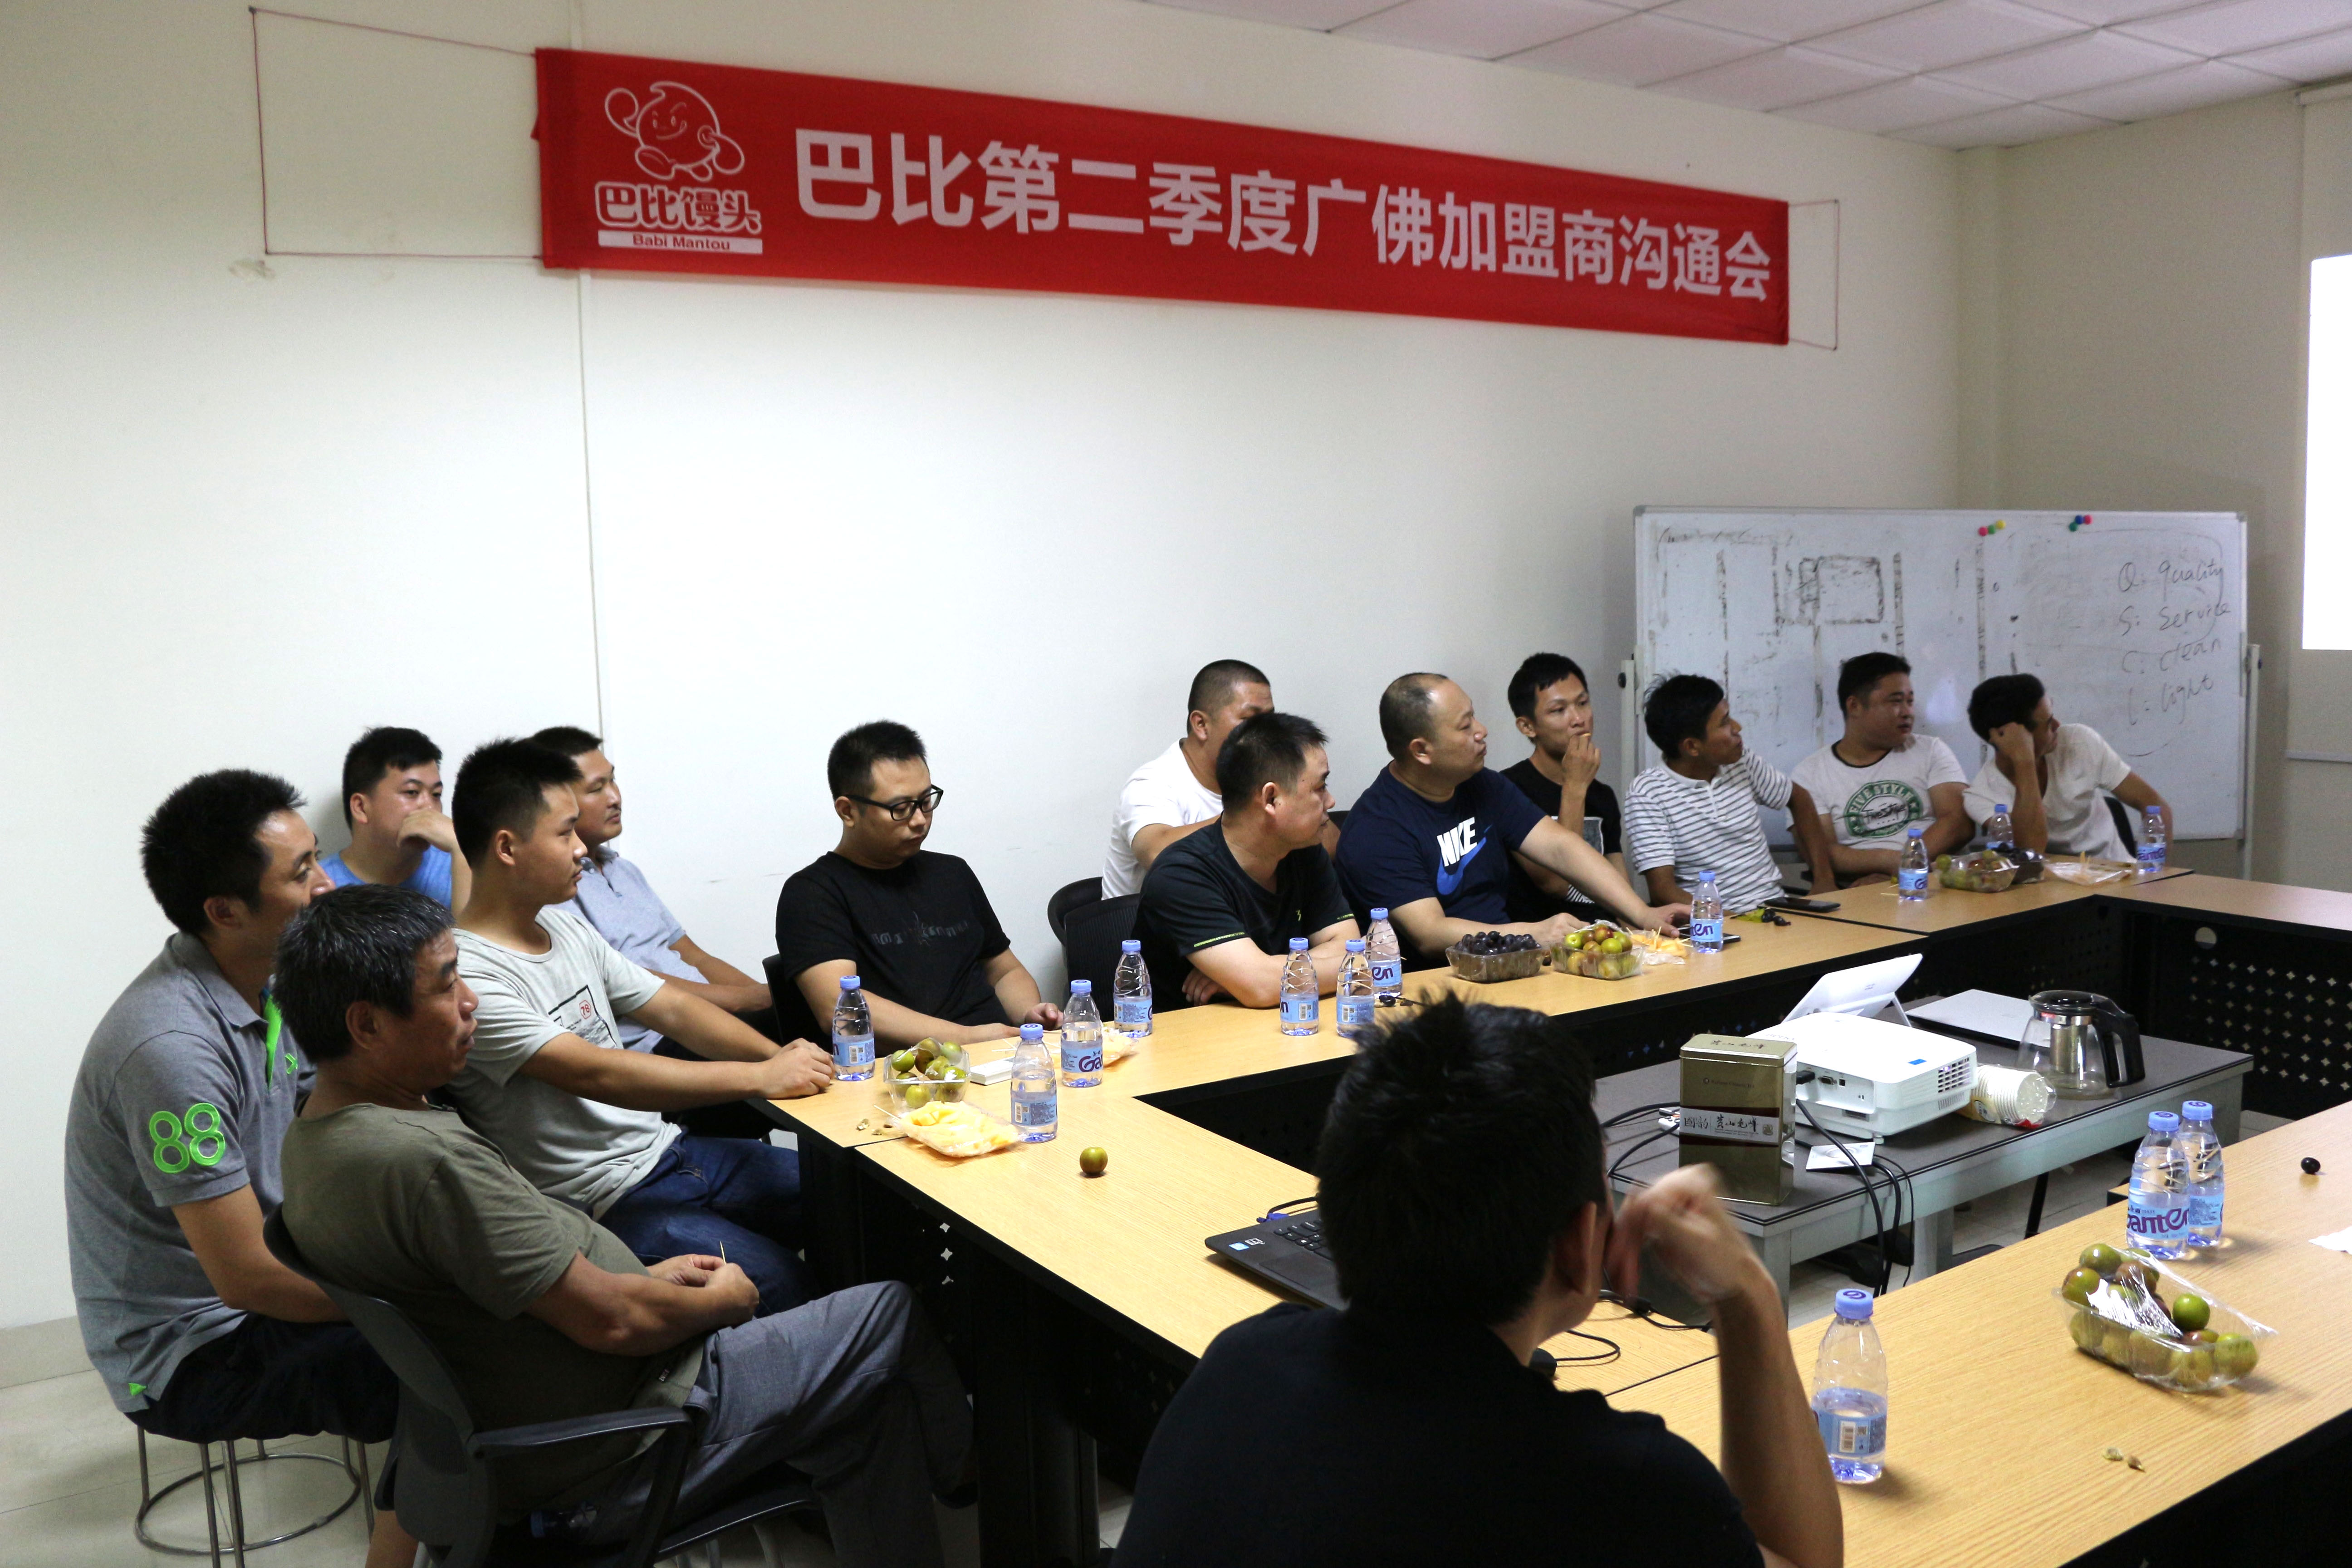 这，又是一次巴比伙伴们心与心之间的深度对话！！---巴比华南区“第二季度加盟商沟通会”在广州生产中心隆重举行